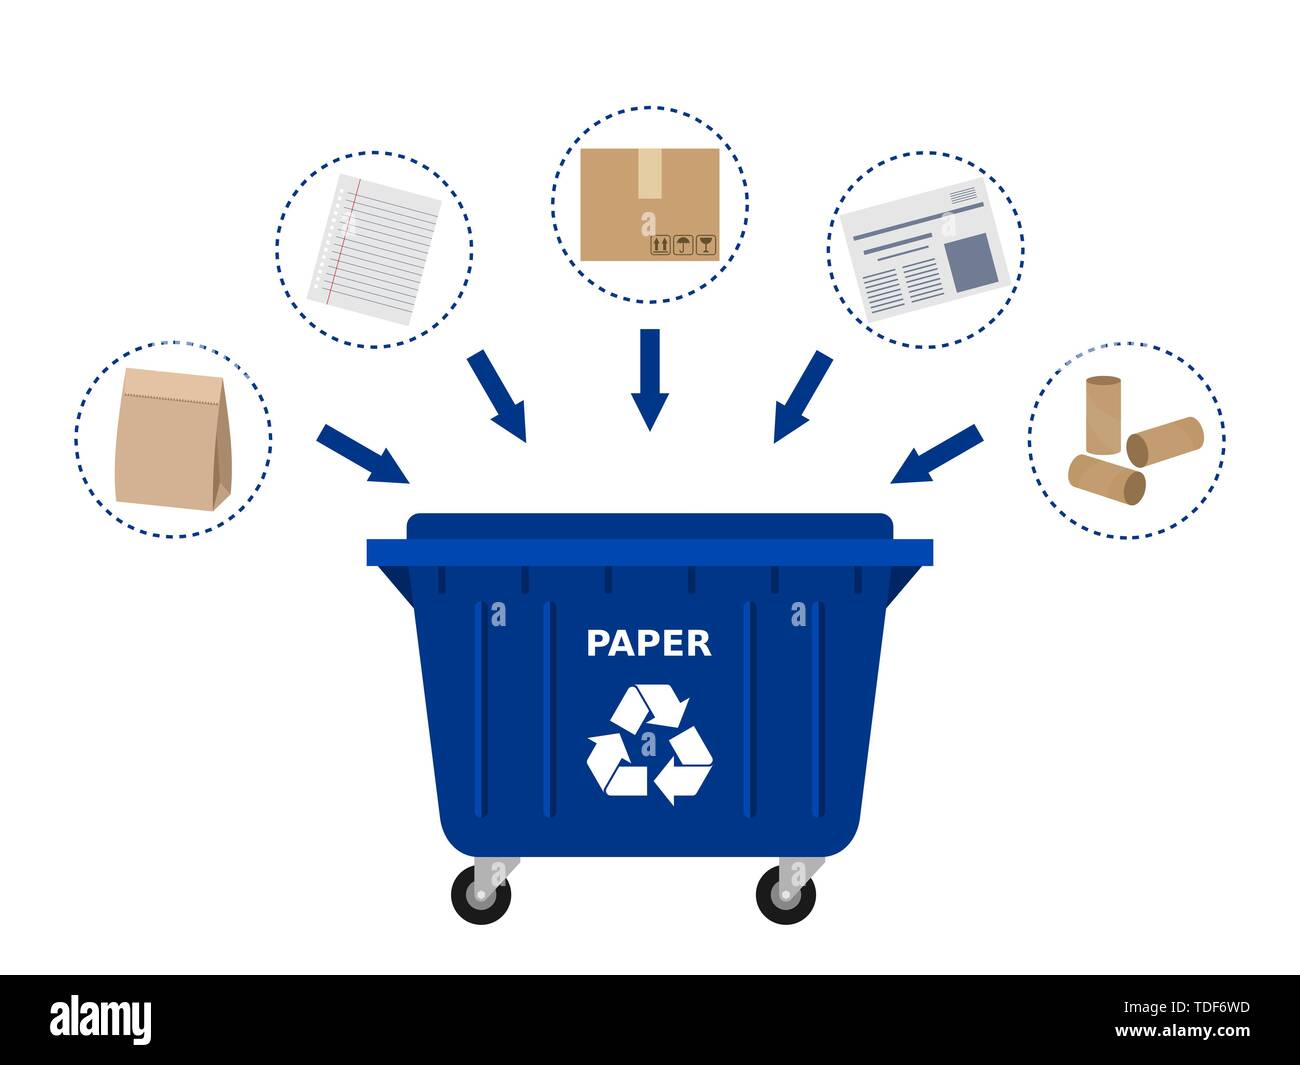 Benne à déchets bleu et les déchets de papier aux fins de recyclage.  Recyclage du papier au tri sélectif des déchets, tri, déchets, eco  friendly. Arrière-plan blanc. Vector Image Vectorielle Stock -